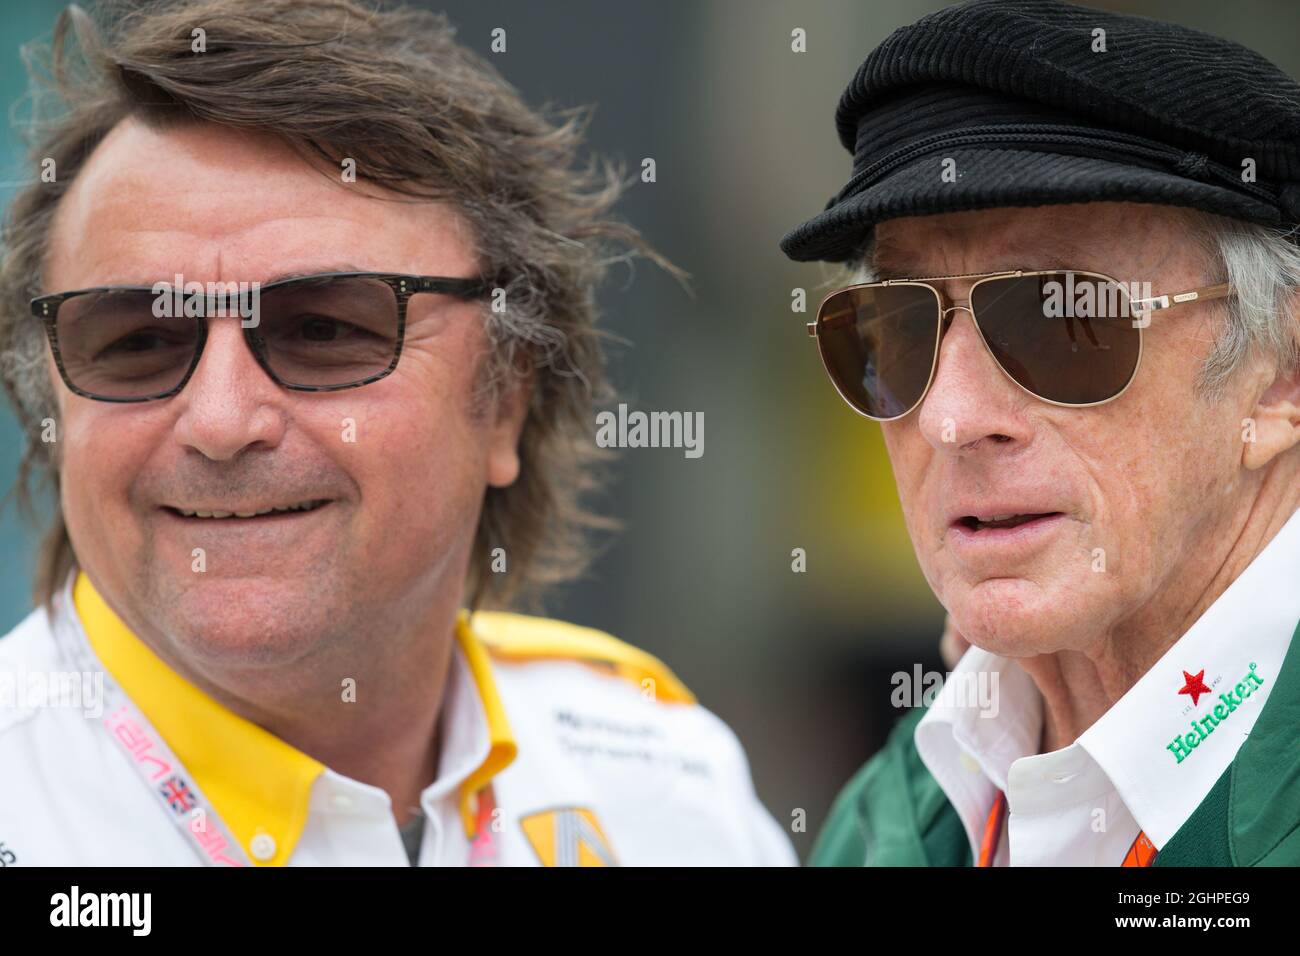 (De gauche à droite) : René Arnoux (FRA) avec Jackie Stewart (GBR). 16.07.2017. Championnat du monde de Formule 1, Rd 10, Grand Prix de Grande-Bretagne, Silverstone, Angleterre, Jour de la course. Le crédit photo doit être lu : images XPB/Press Association. Banque D'Images